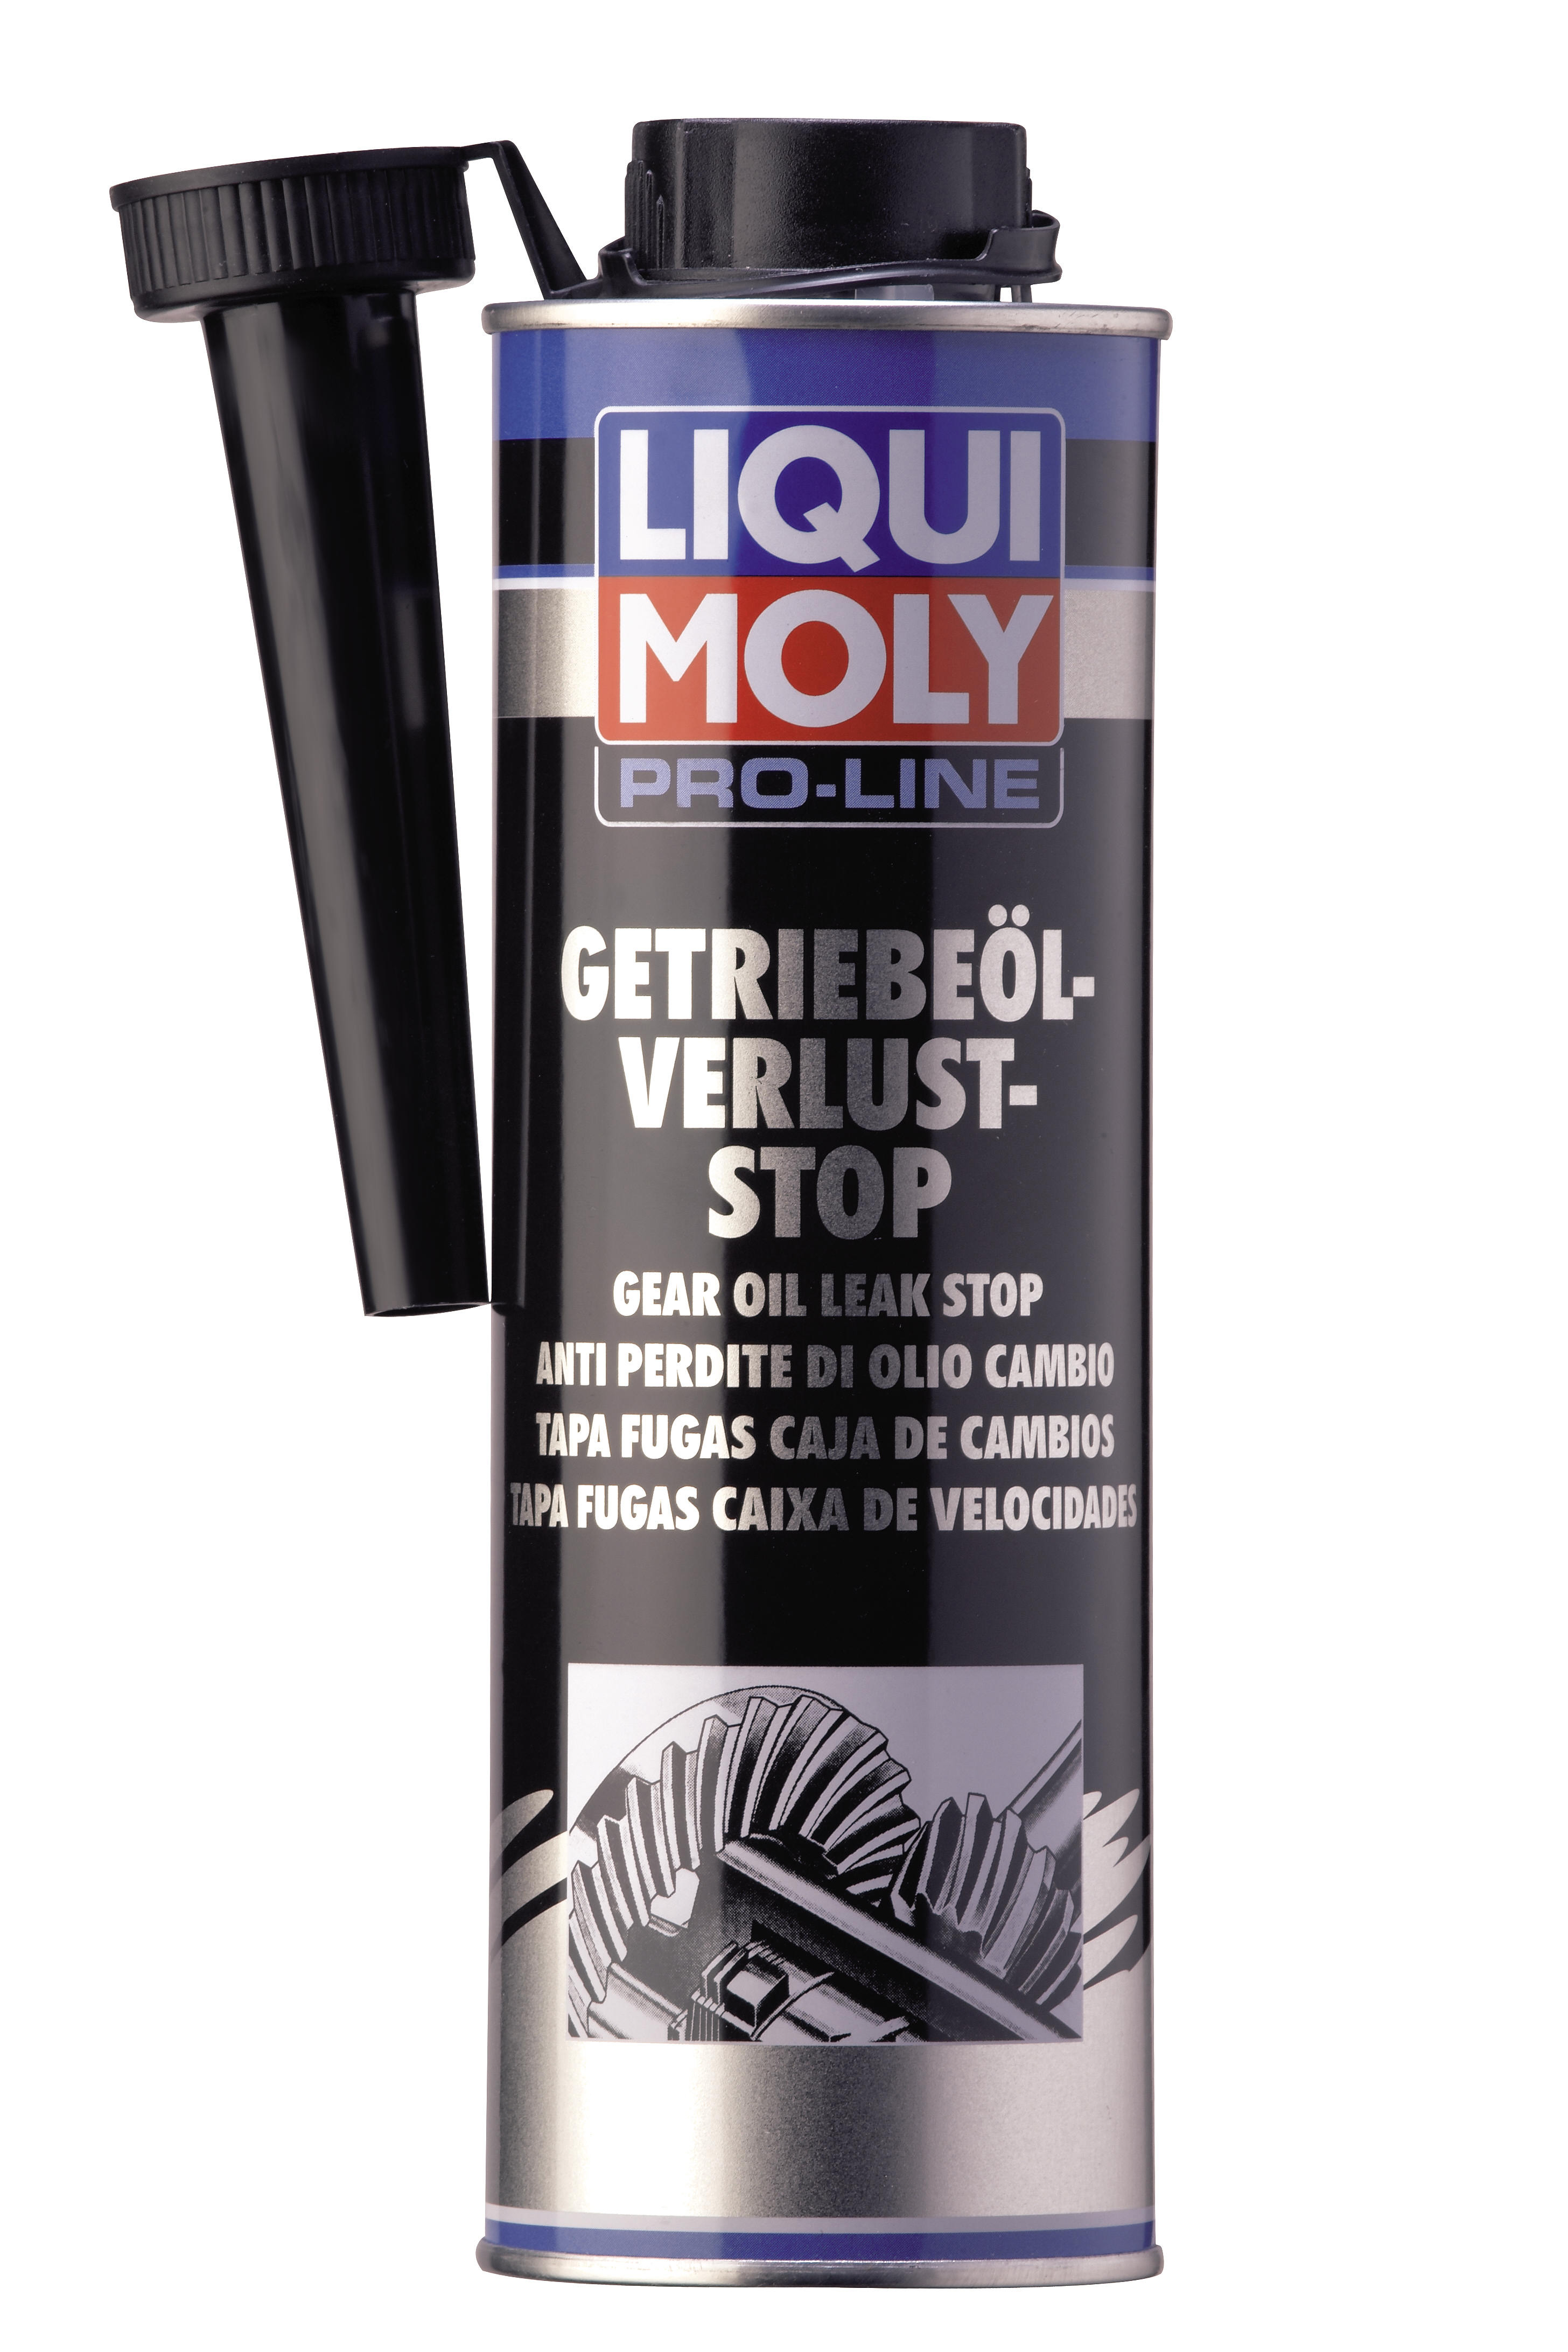 Средство для остановки течи трансмиссионного масла Pro-Line Getriebeoil-Verlust-Stop, 500мл - Liqui Moly 5199